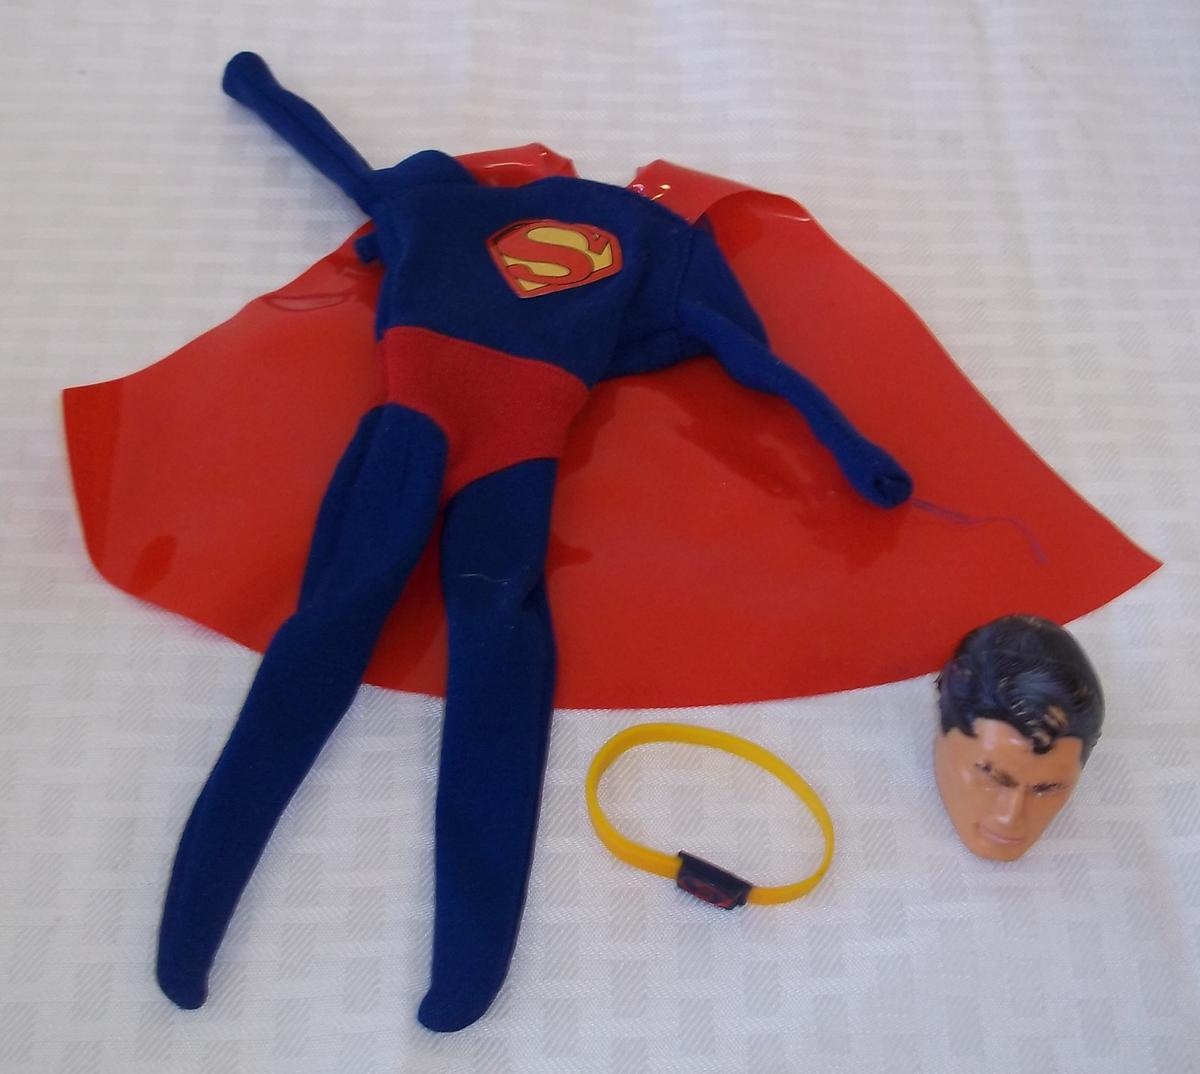 Vintage 1960s Ideal Captain Action Doll Series Superman Accessories Lot Face Mask Cape Suit Belt